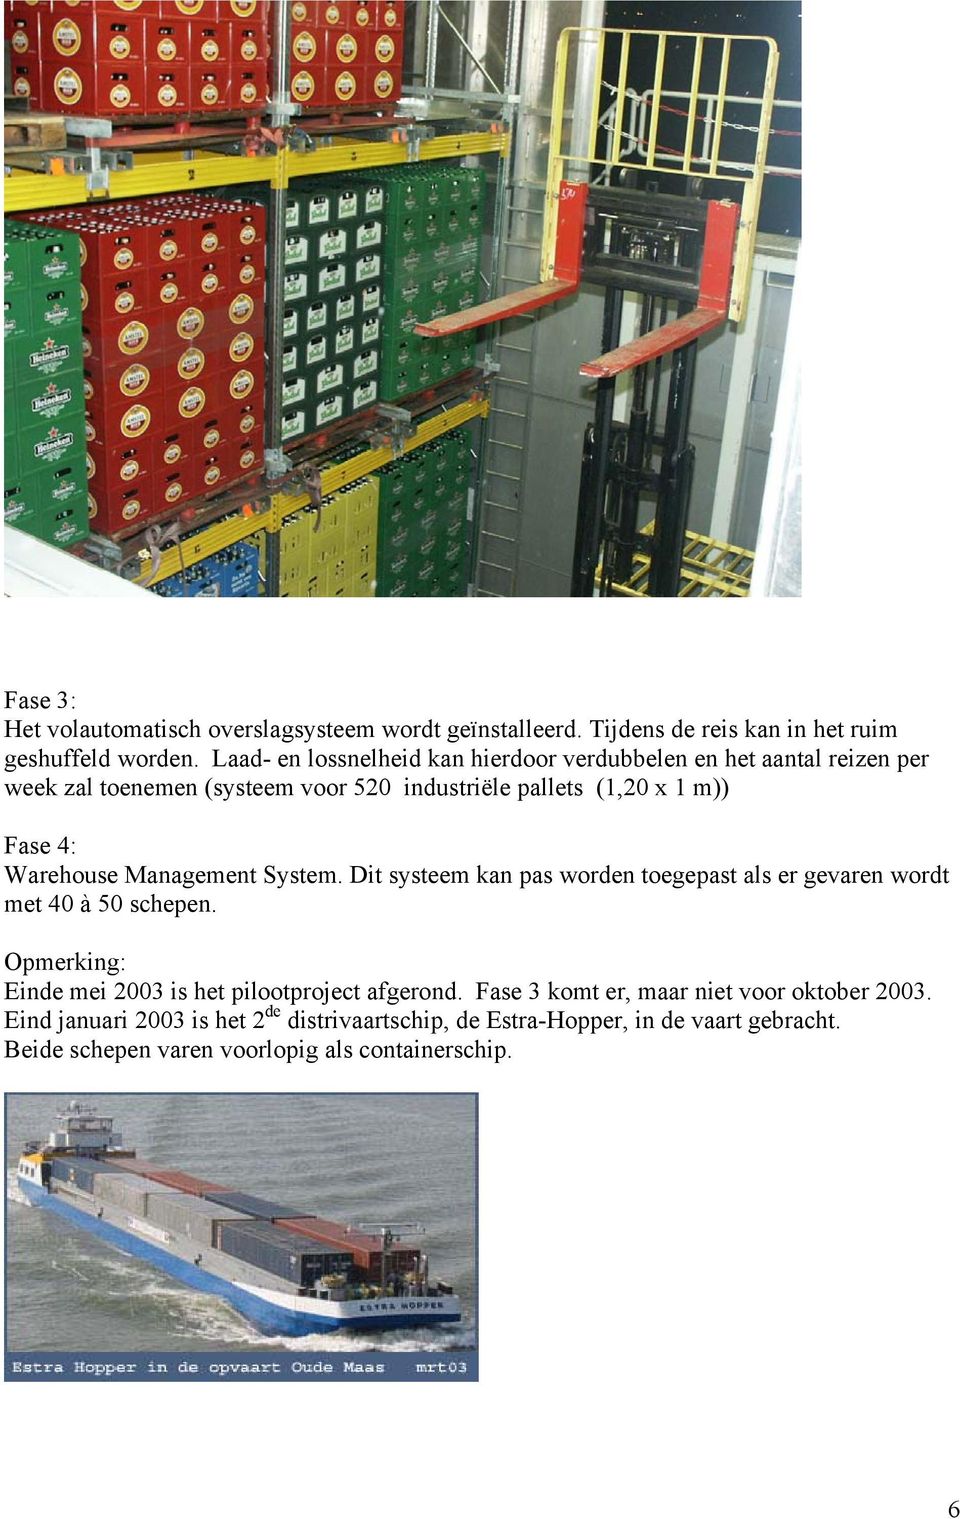 Warehouse Management System. Dit systeem kan pas worden toegepast als er gevaren wordt met 40 à 50 schepen.